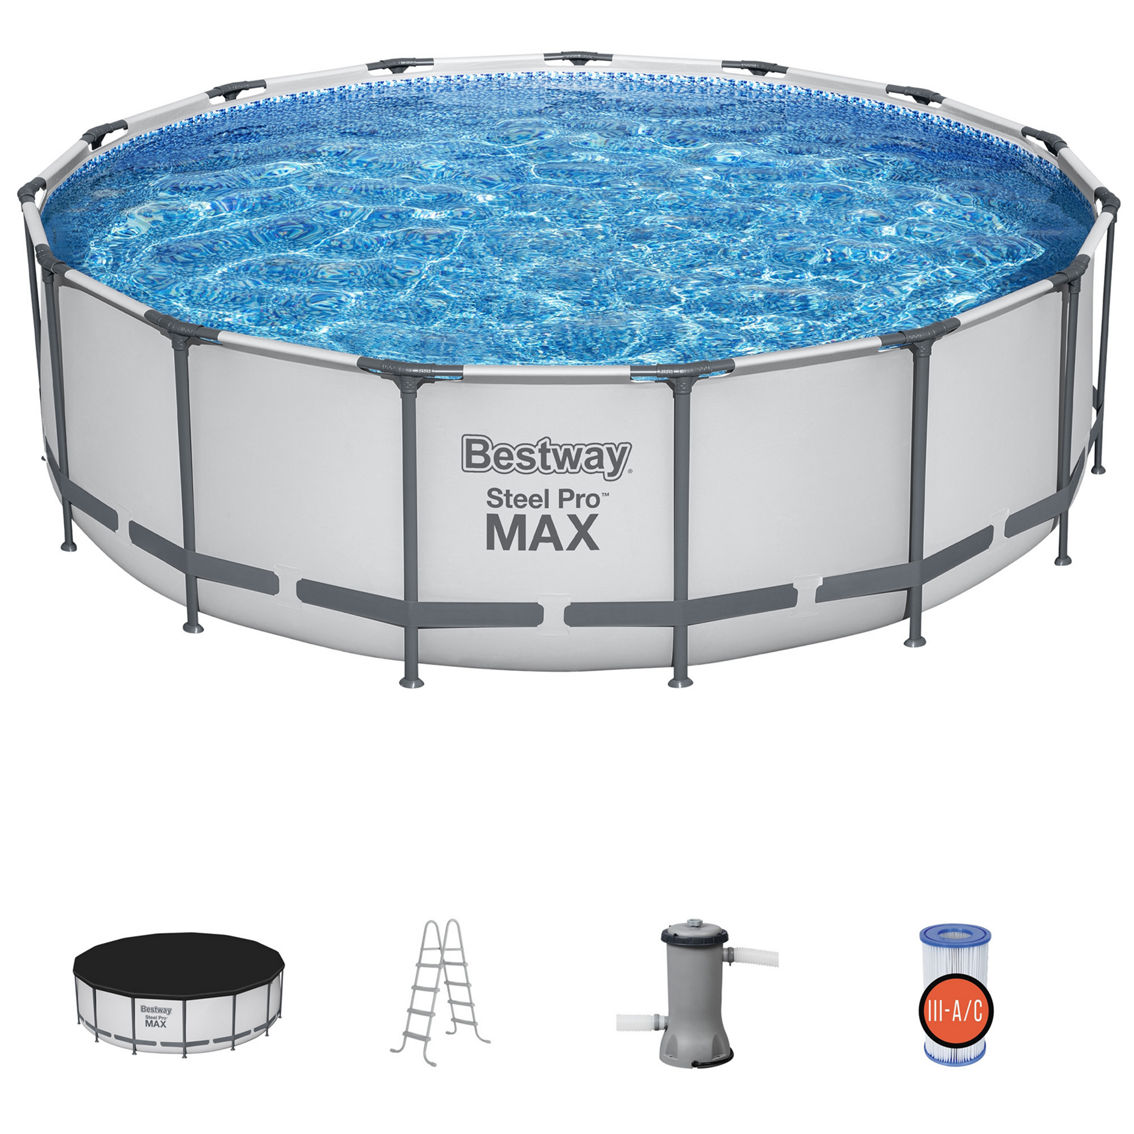 Bestway Steel Pro MAX: Pool Set - Image 2 of 9